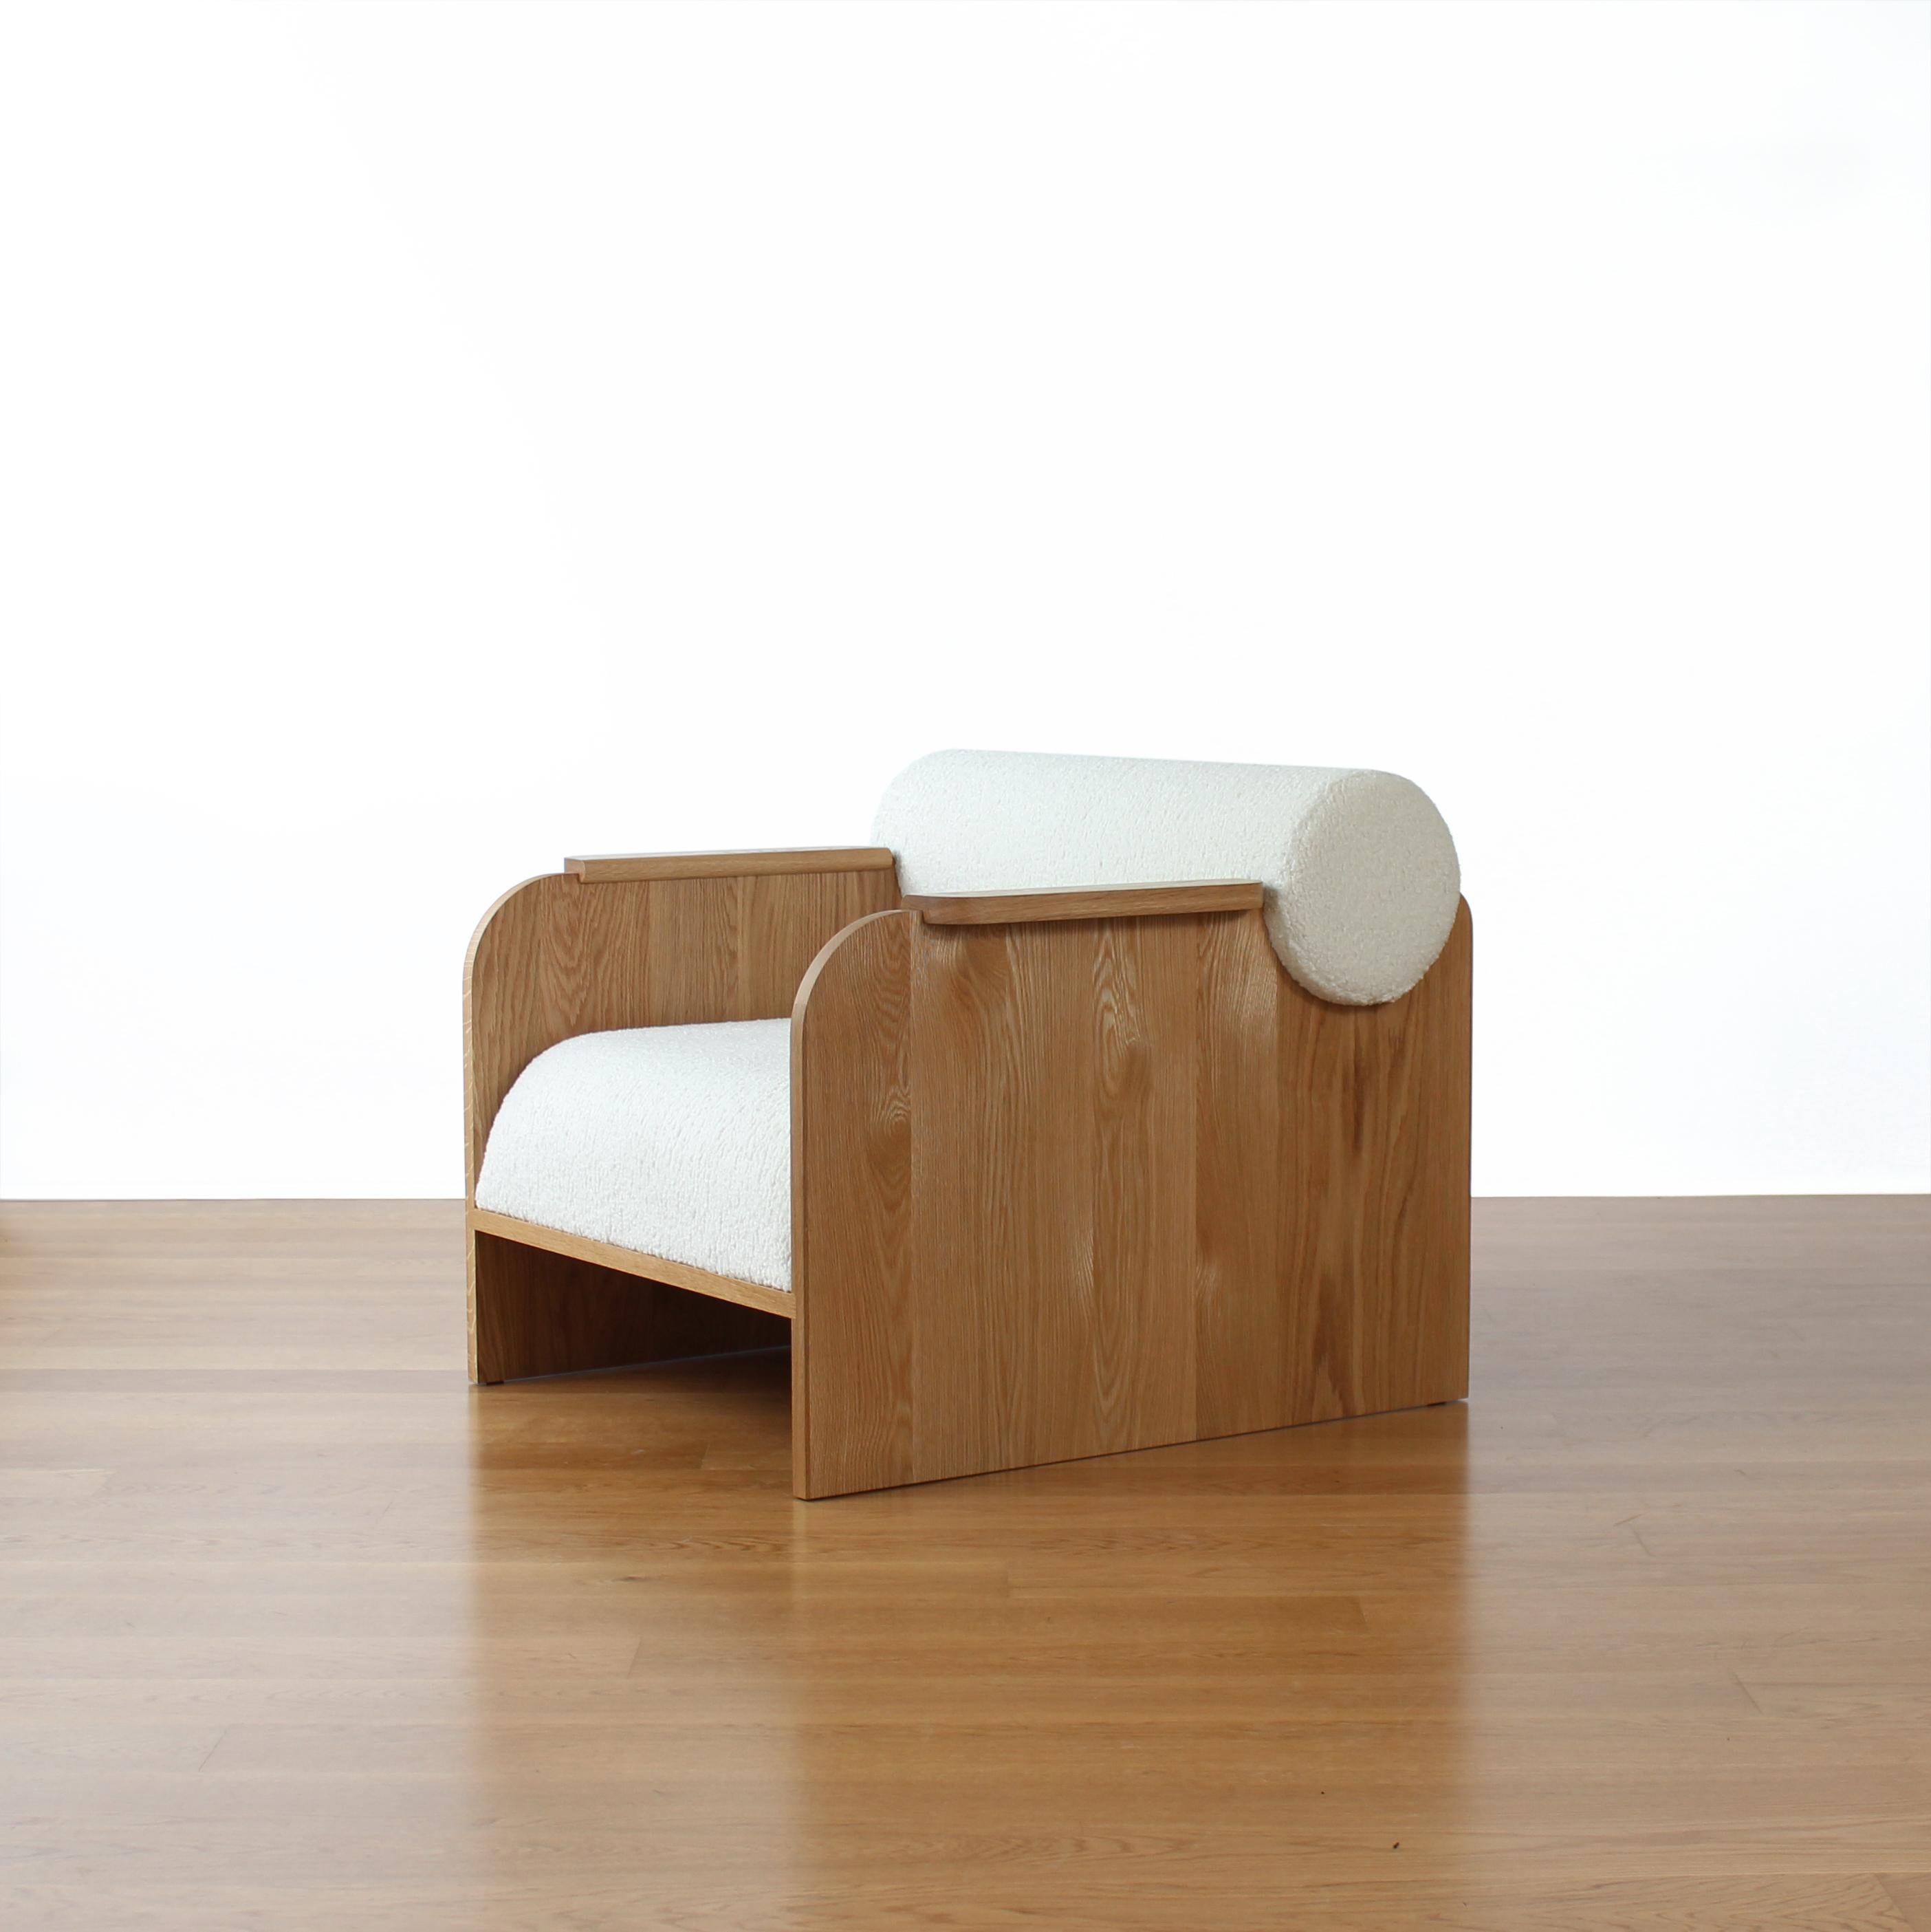 June Lounge Chair von Crump and Kwash 

Gestell aus Massivholz / handgeriebenes Ölfinish / hochwertige Schaumstoffpolsterung / veganer Shearling-Bezug / COM optional

Anpassungen verfügbar.